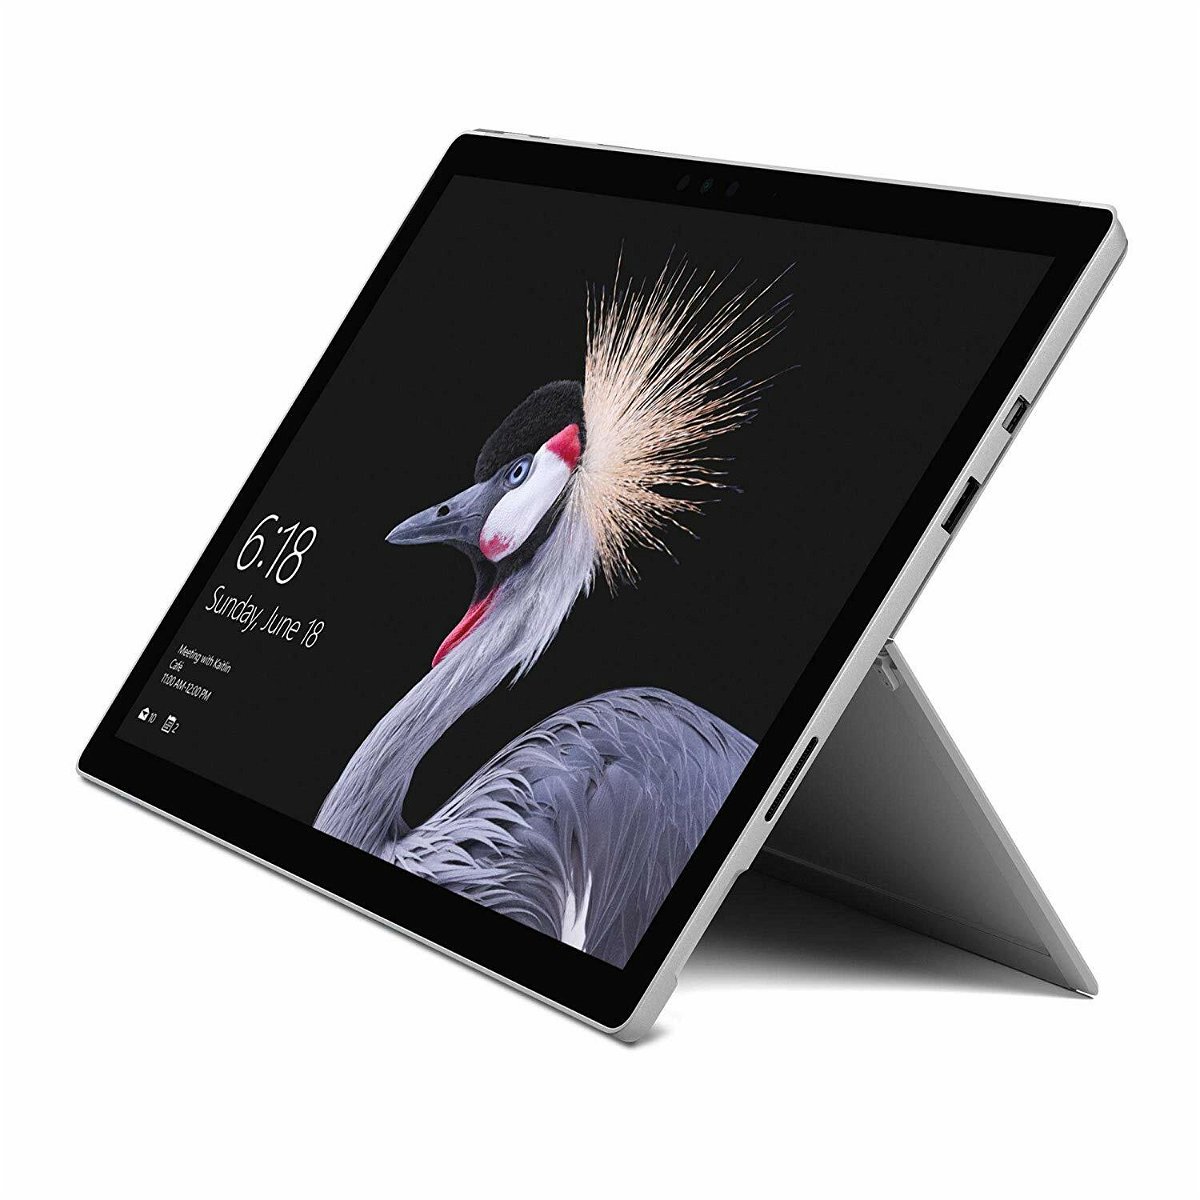 Immagine stampa del Microsoft Surface Pro con Intel Core i5